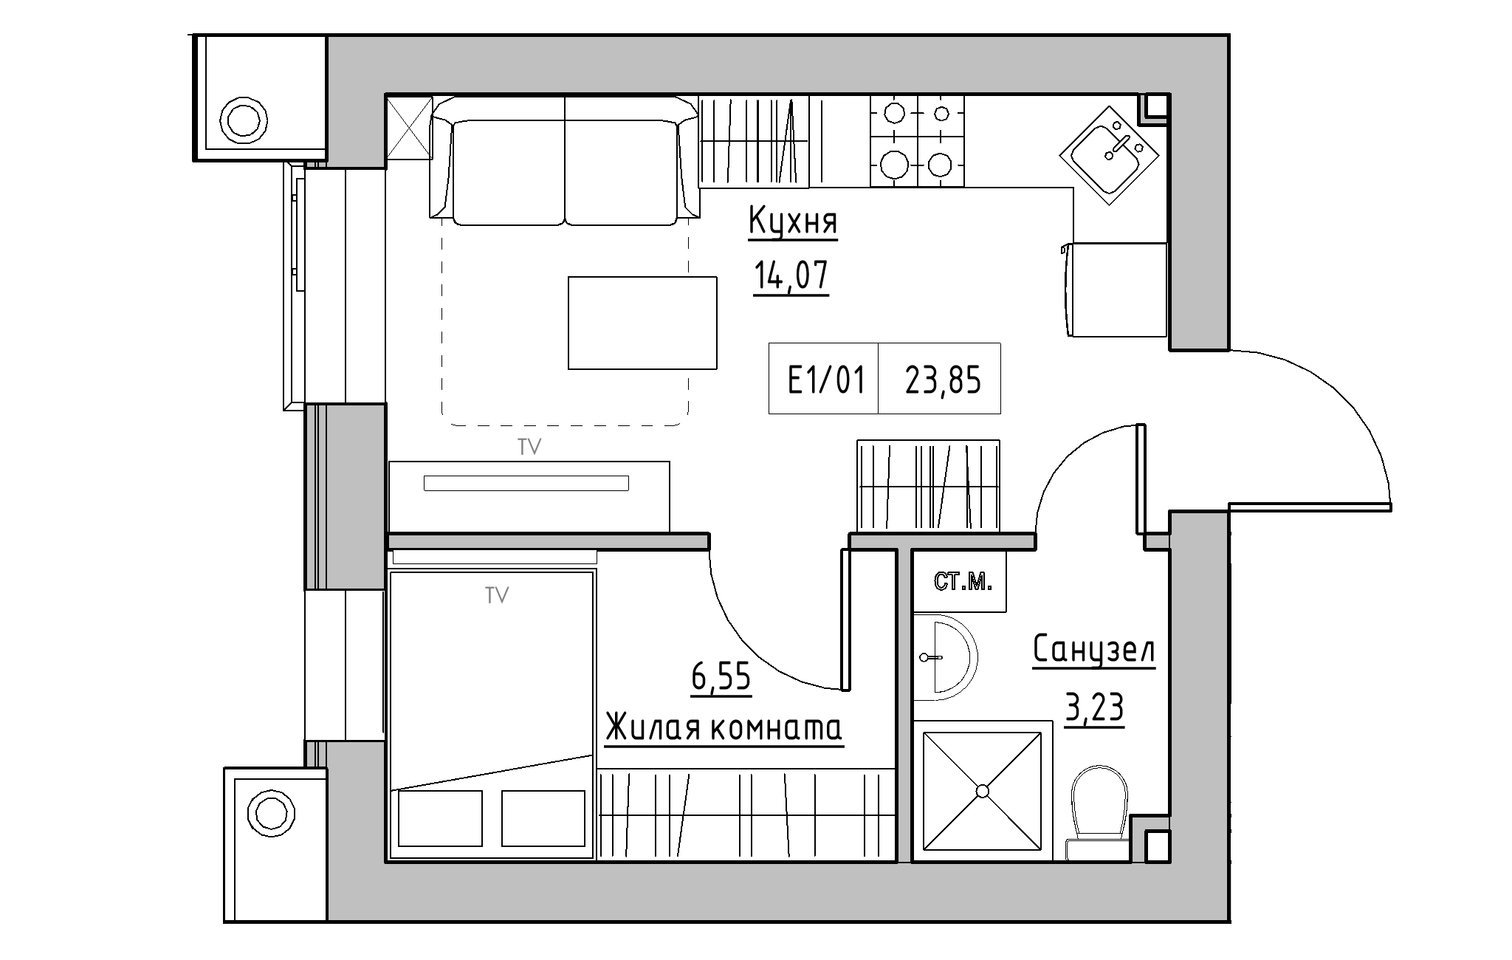 Планировка 1-к квартира площей 23.85м2, KS-013-04/0003.